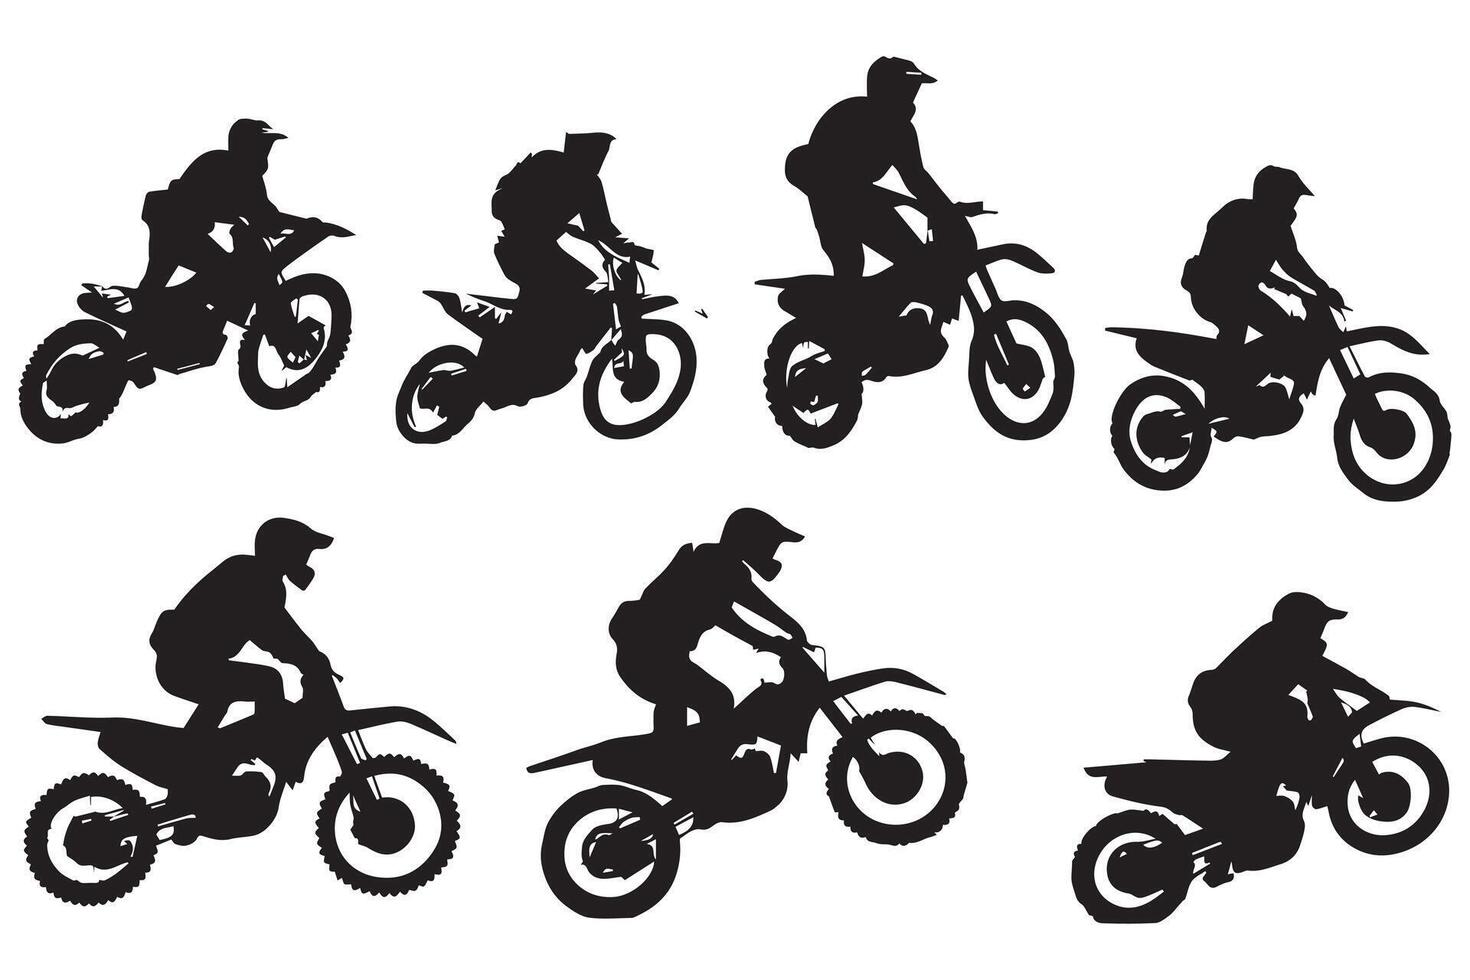 Moto-Cross Rennen, Moto-Cross Rennfahrer Springen auf ein Motorrad, isoliert Silhouette, Vorderseite Sicht. Tinte Zeichnung, Freistil Moto-Cross Profi Design vektor